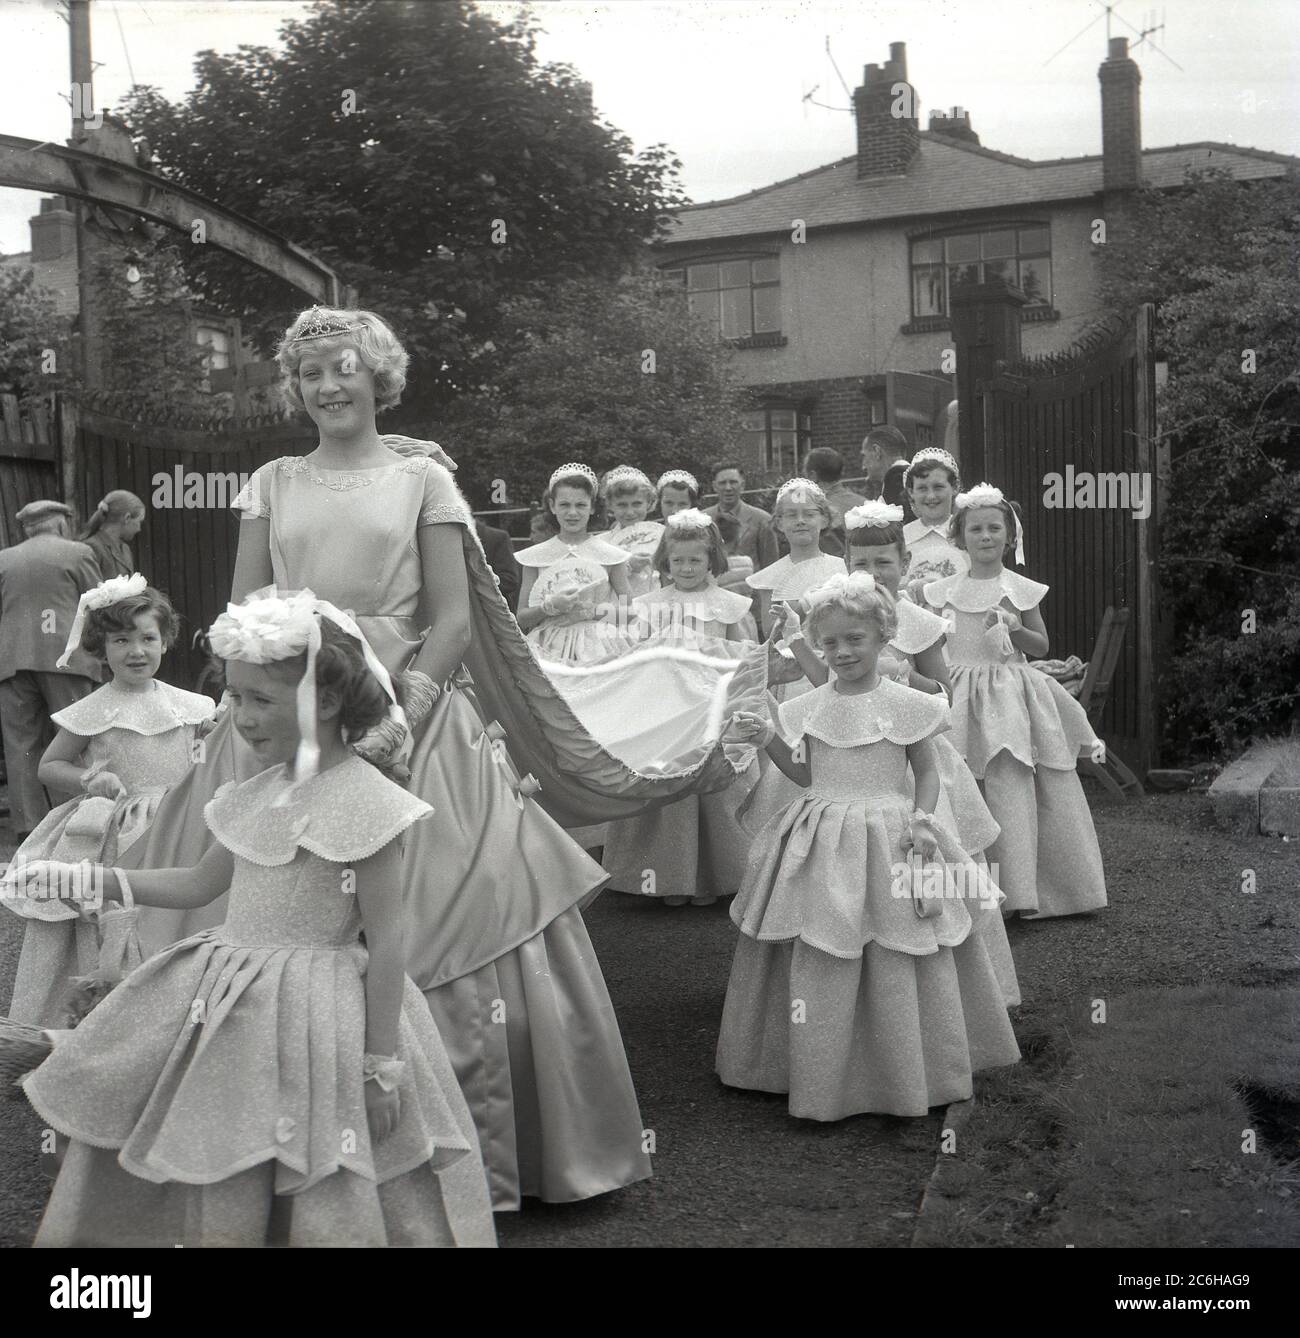 1950er Jahre, historisch, mit einem großen Lächeln auf ihrem Gesicht, die neu gekrönte Rose Queen, Farnworth, Bolton, Lancashire, England, Großbritannien mit ihrer Gefolgschaft von jungen Mädchen, die den Zug halten und in einer Prozession durch den lokalen Park gehen. Das jährliche Rose Queen Festival, das im Juni in den 1880er Jahren stattfand, wurde nach den Kriegen der Rosen von 1455-87 zu einem wichtigen jährlichen Ereignis in vielen Städten und Dörfern in ganz Großbritannien, insbesondere in Lancashire, dem sogenannten Red Rose County. Stockfoto